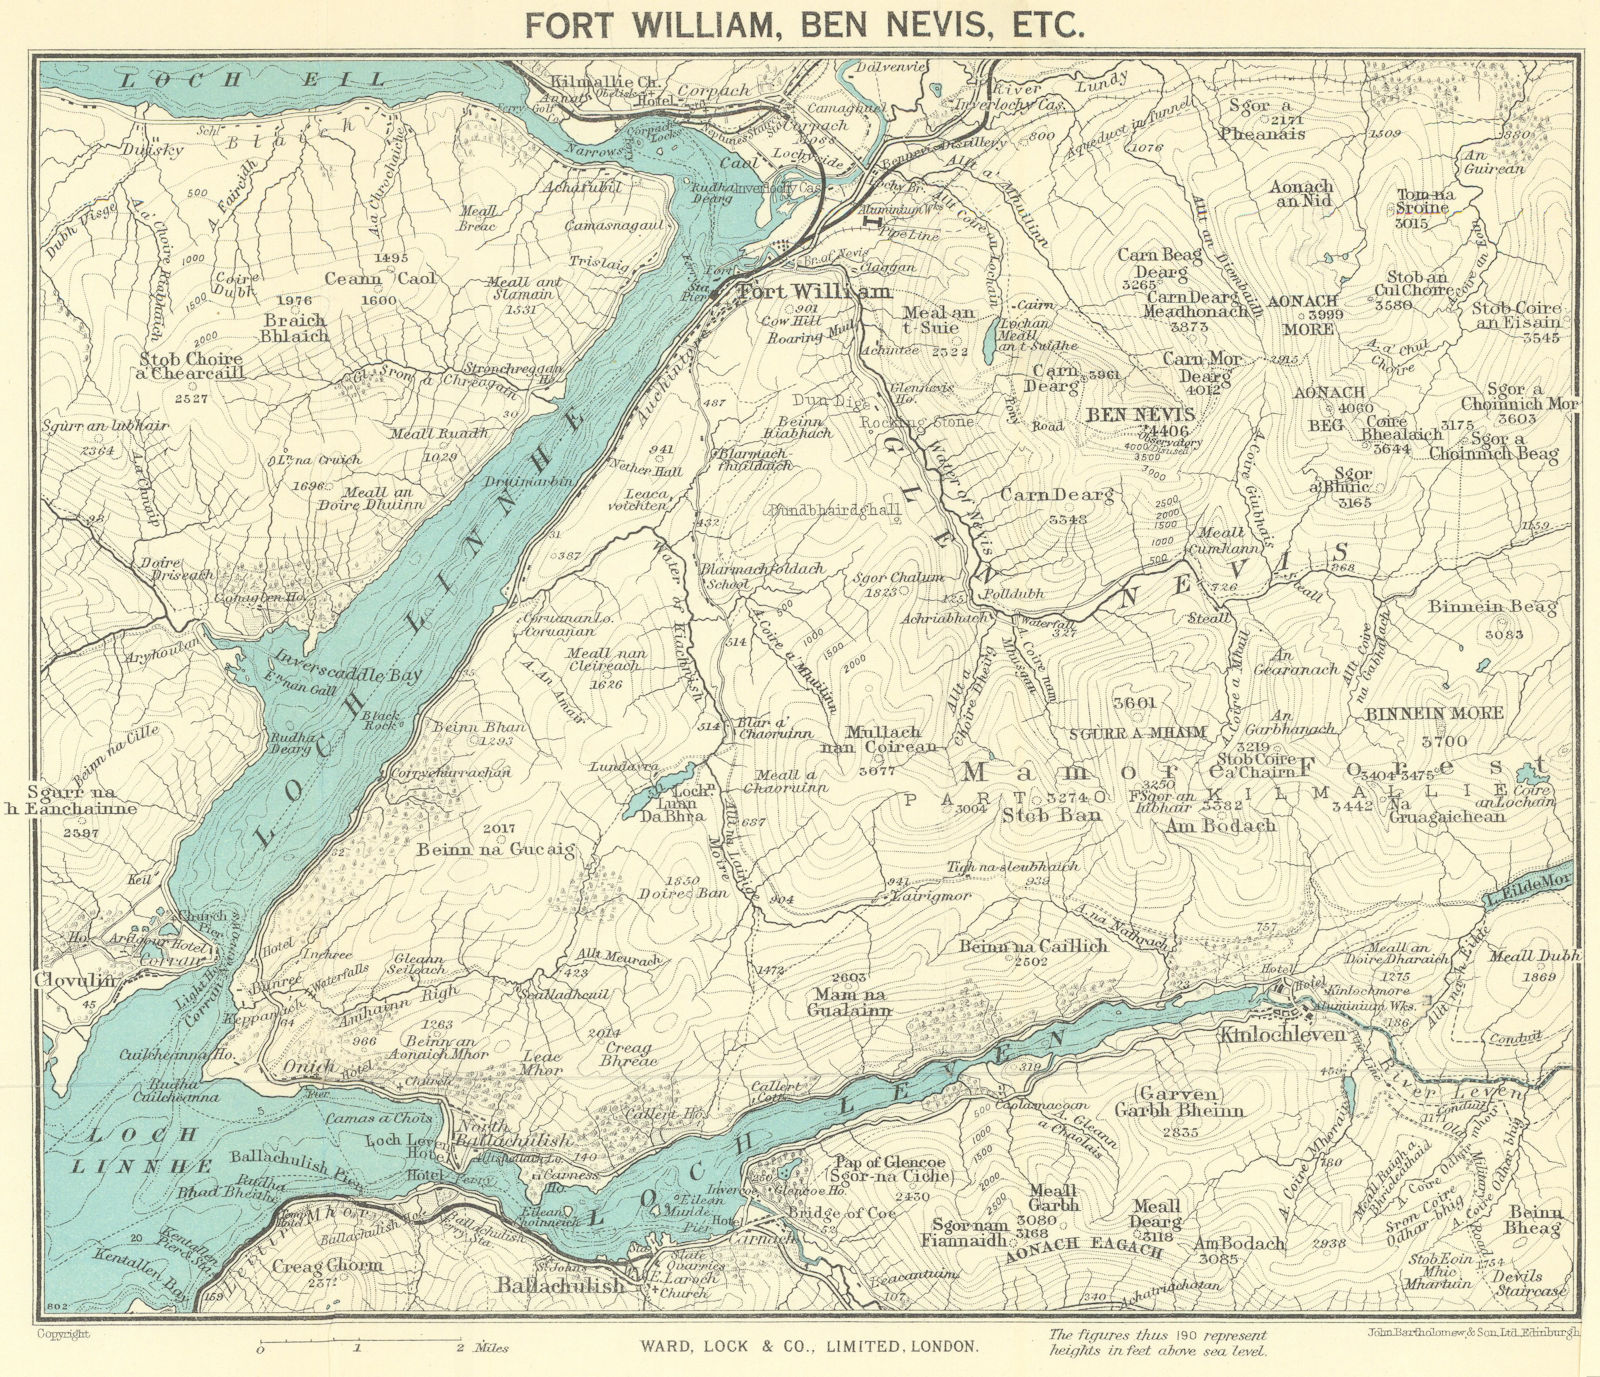 LOCHABER. Fort William Ben Nevis Loch Linnhe/Leven. Scotland. WARD LOCK 1951 map